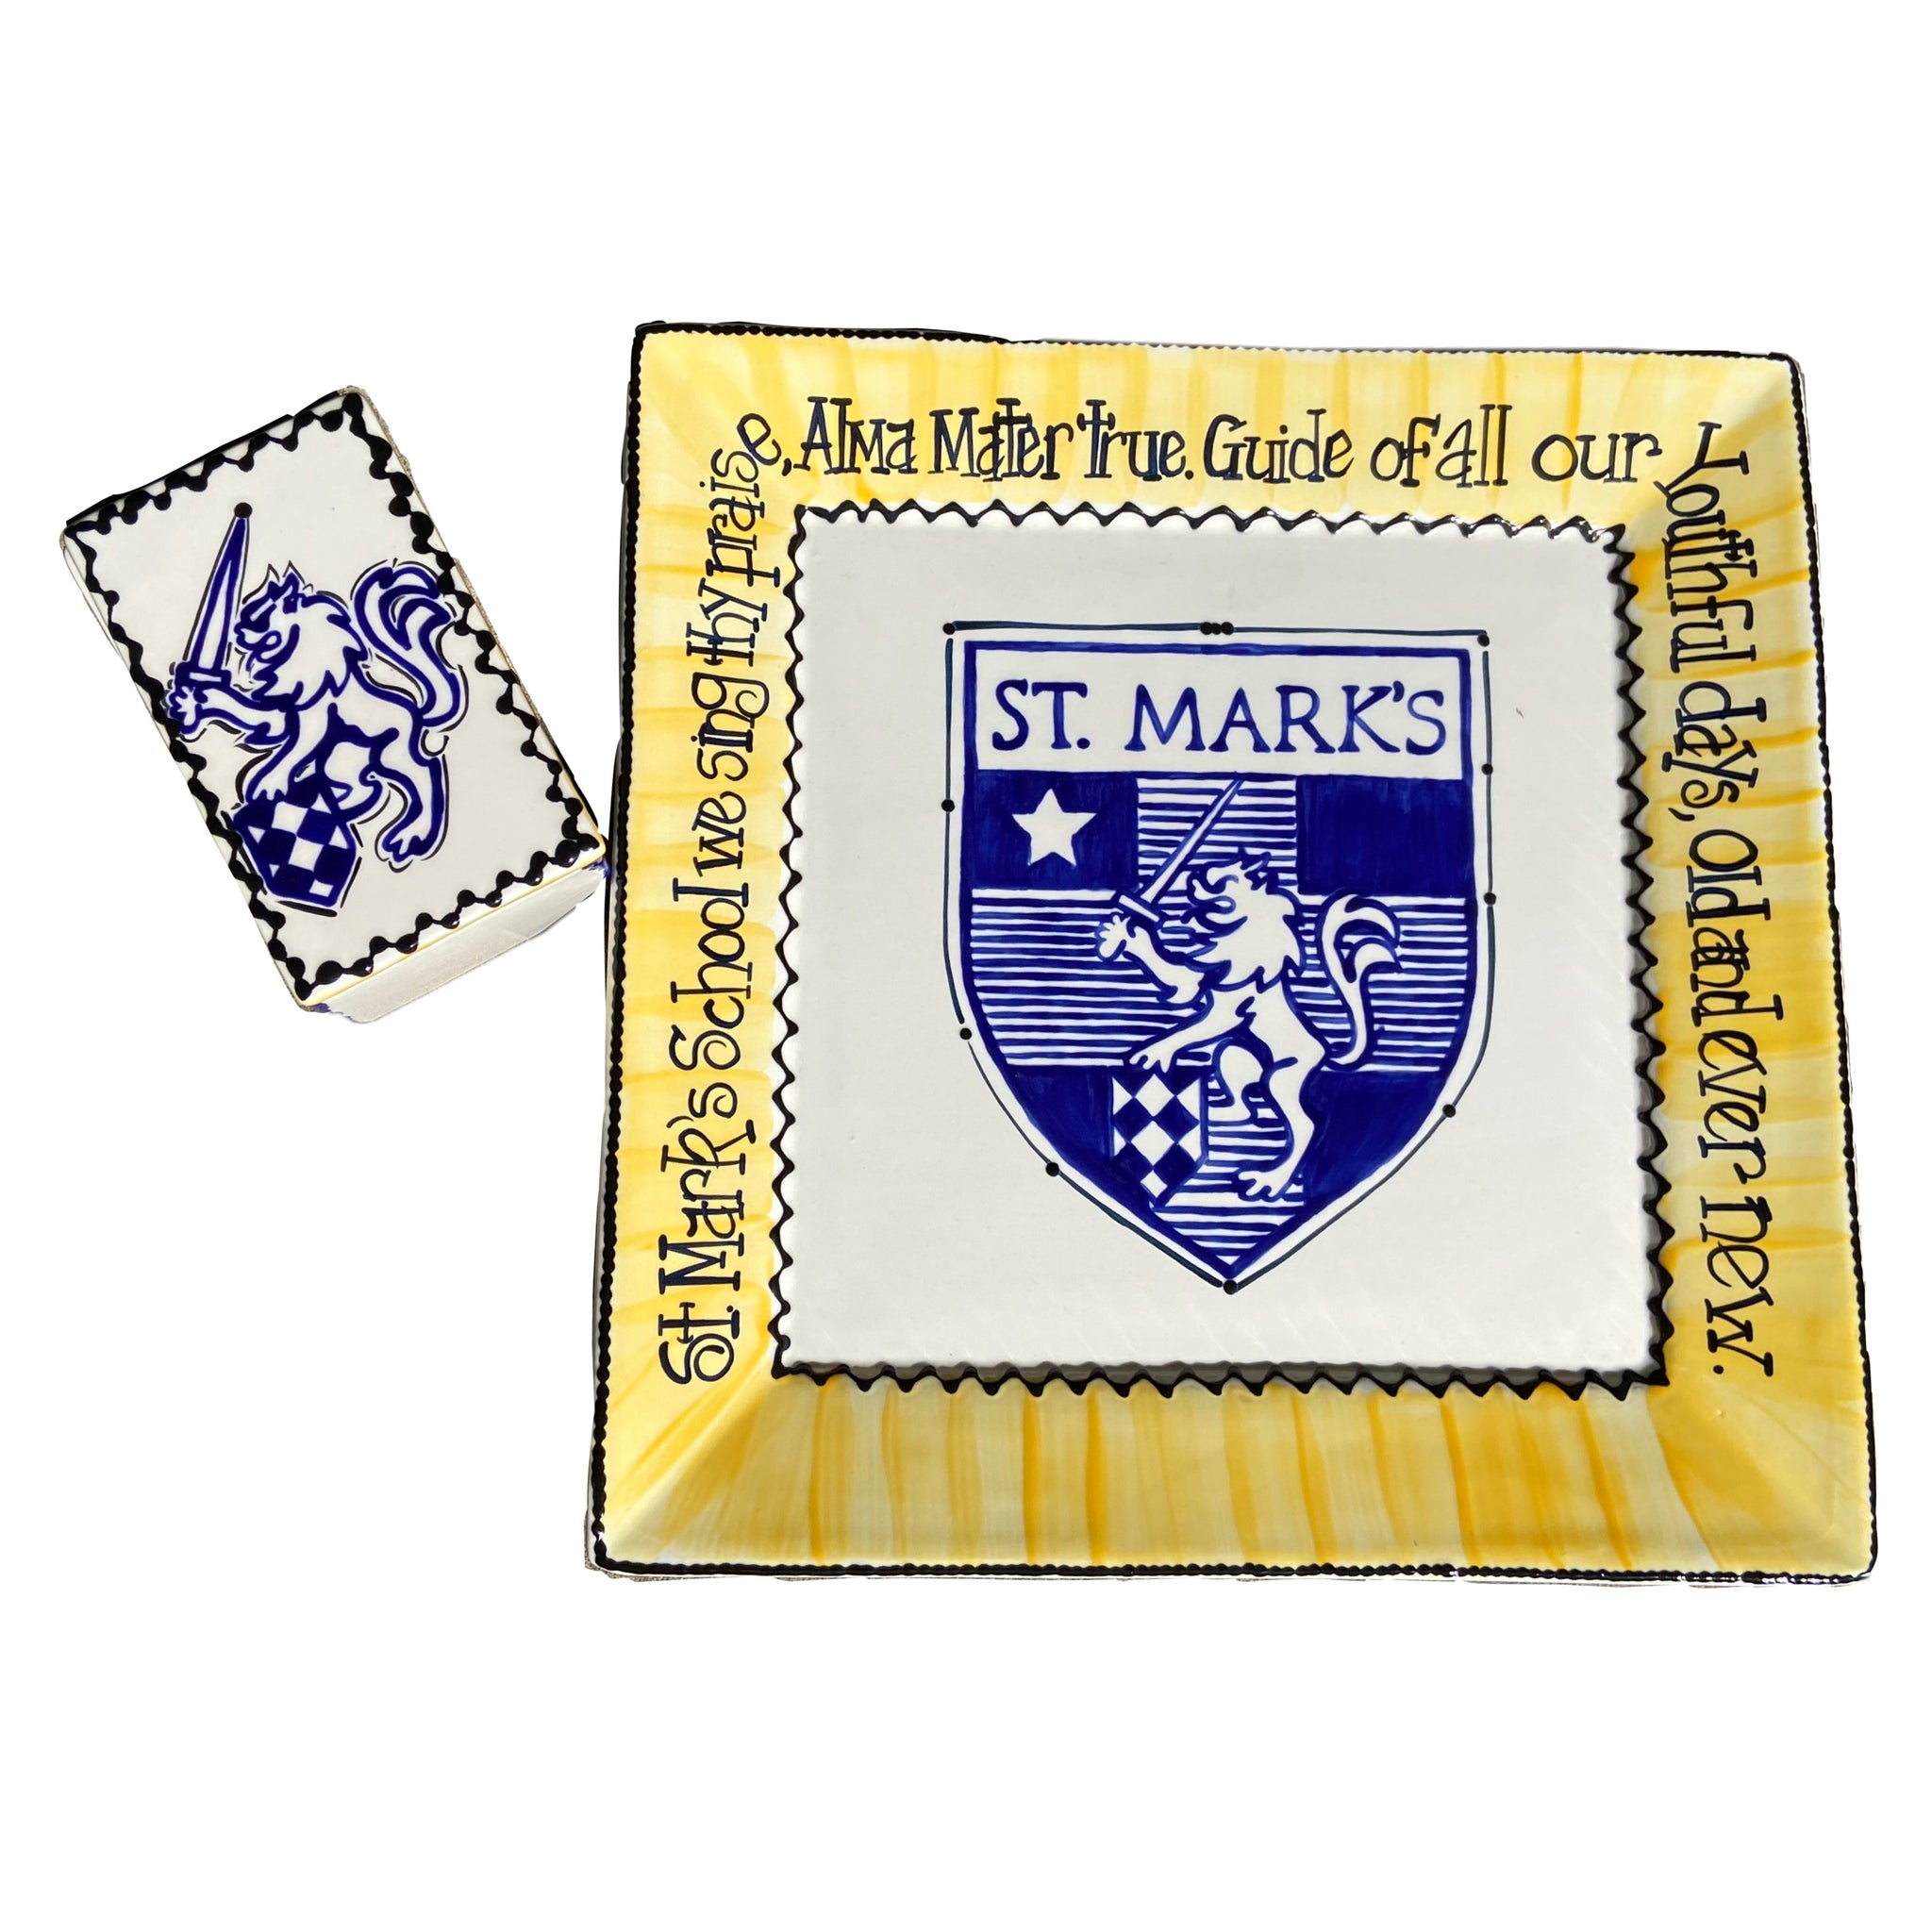 St. Mark's Ceramic Tray and Box